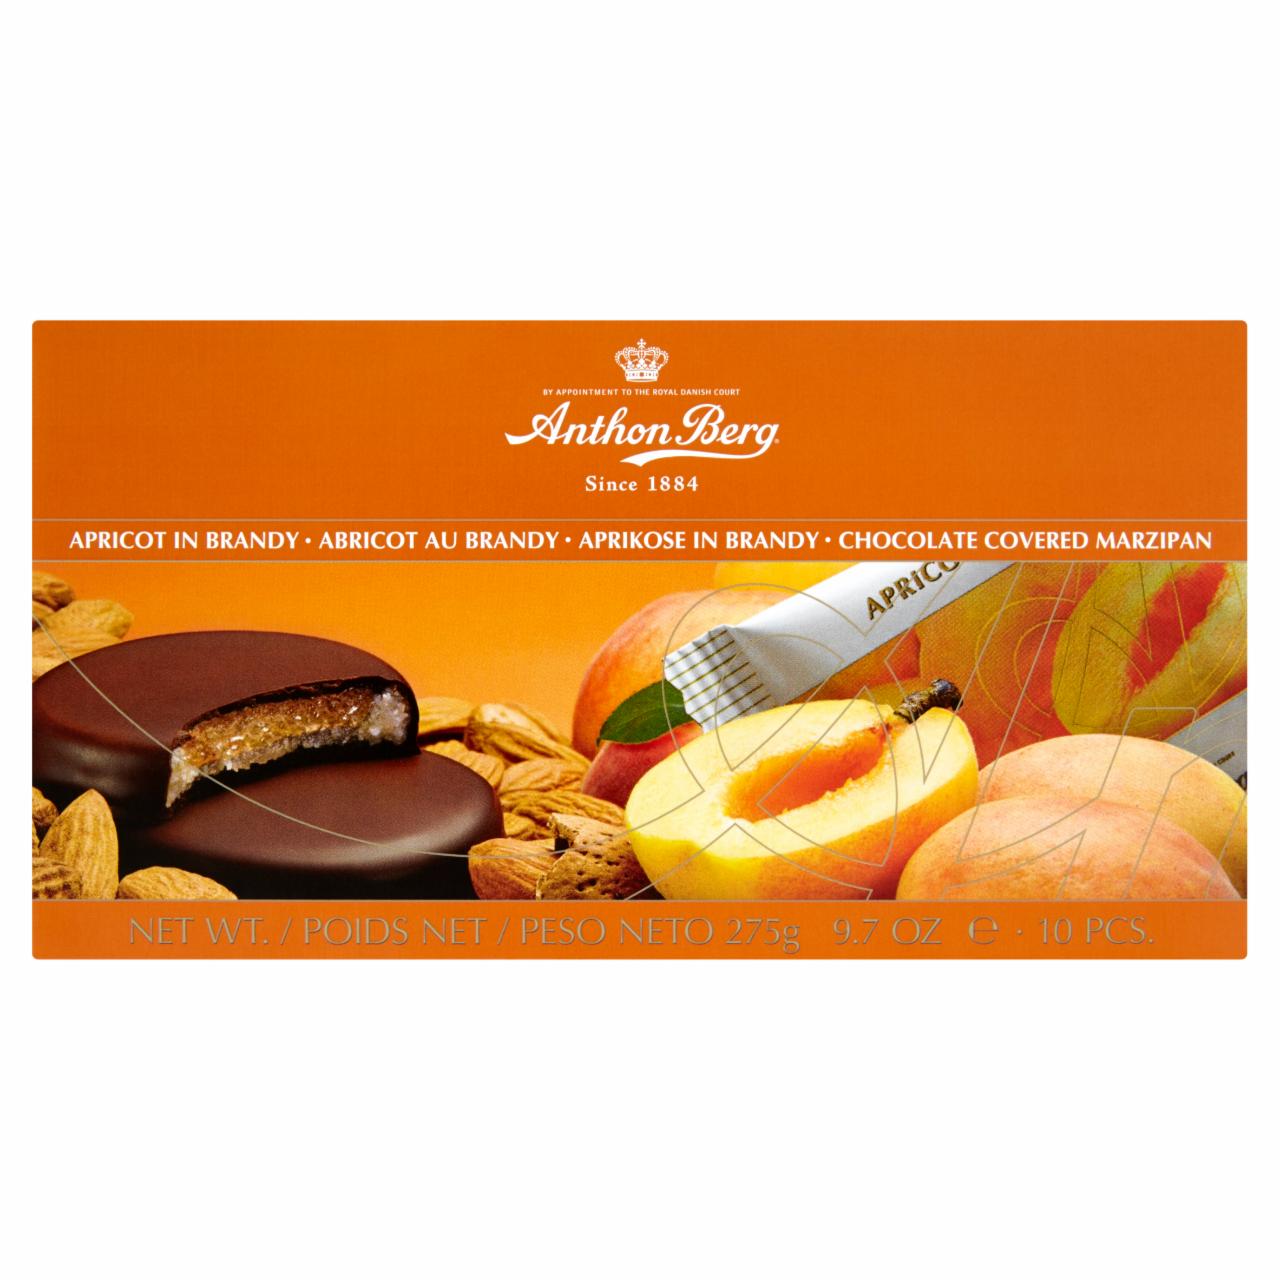 Képek - Anthon Berg csokoládé marcipánnal és konyakban levő sárgabarackkal töltve 10 db 275 g